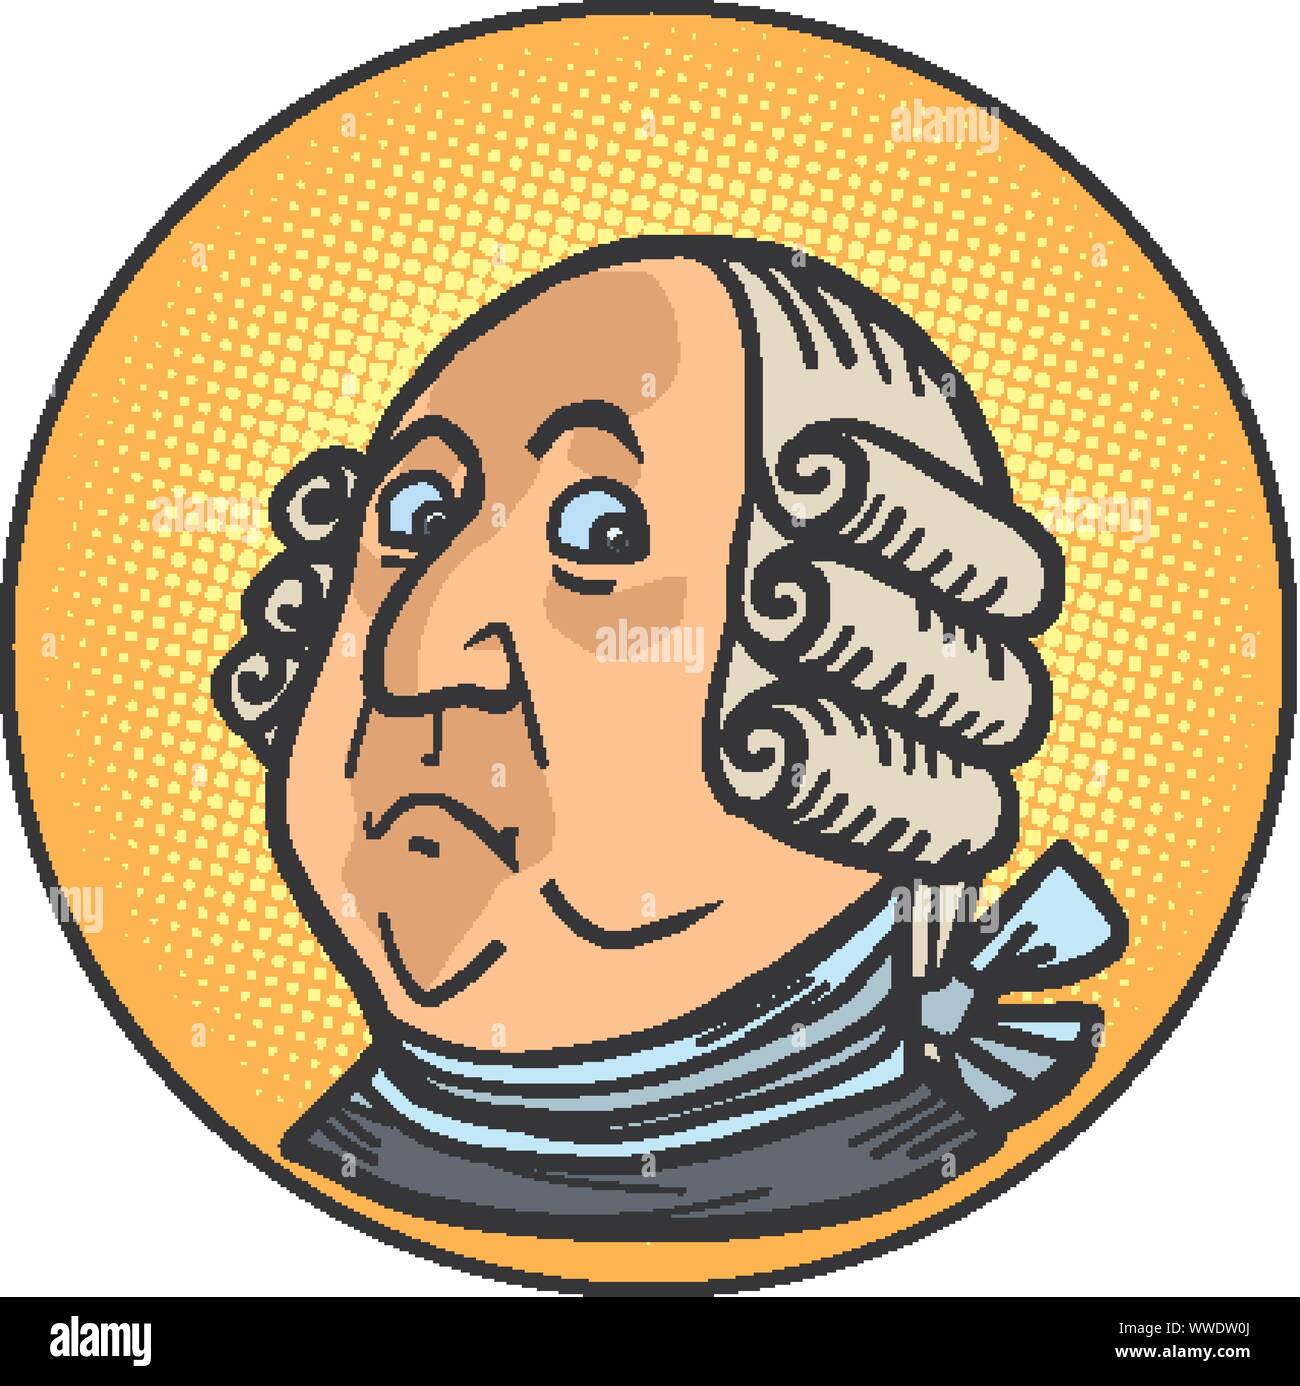 Le président Benjamin Franklin, figure historique, portrait. comic cartoon retro pop art dessin illustration vectorielle Illustration de Vecteur